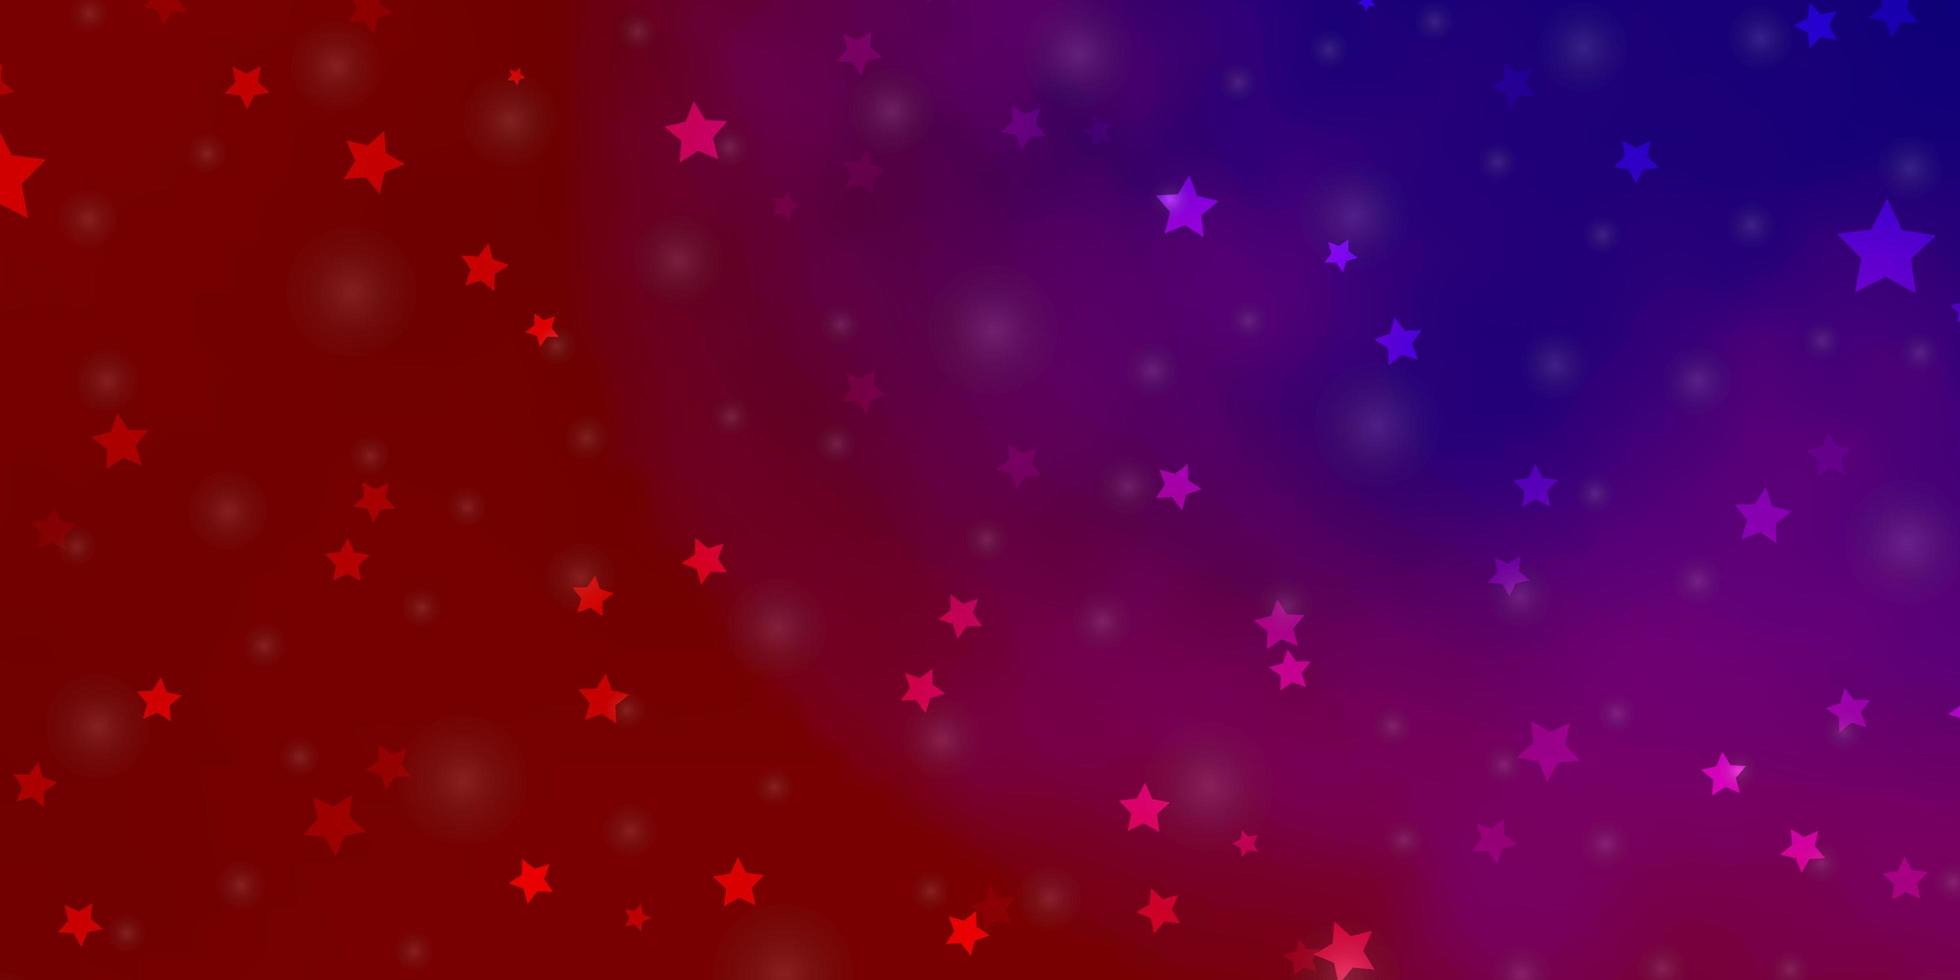 sfondo vettoriale azzurro, rosso con stelle piccole e grandi.